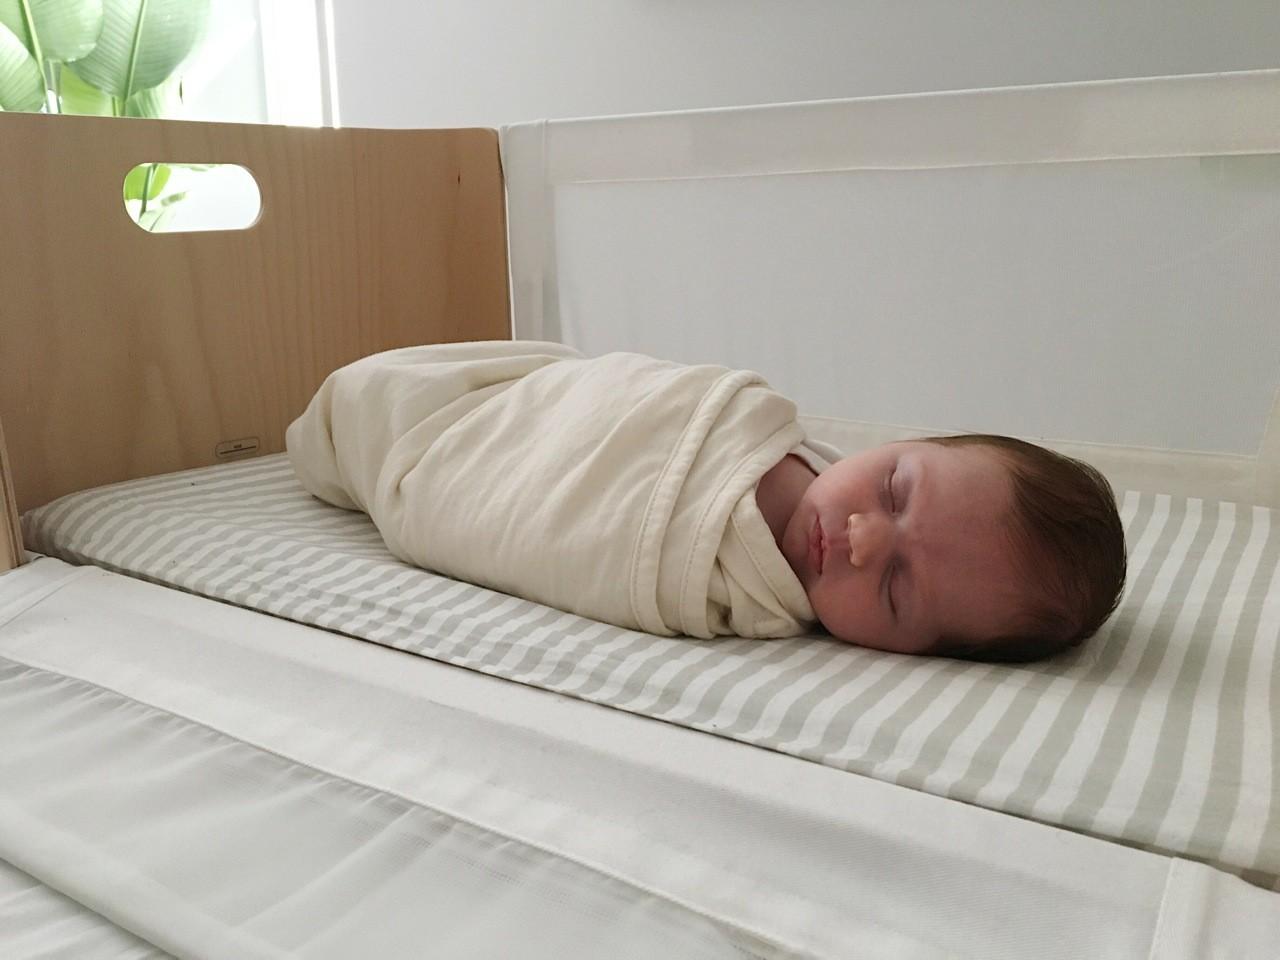 Bednest - Bednest wieg including standard mattress